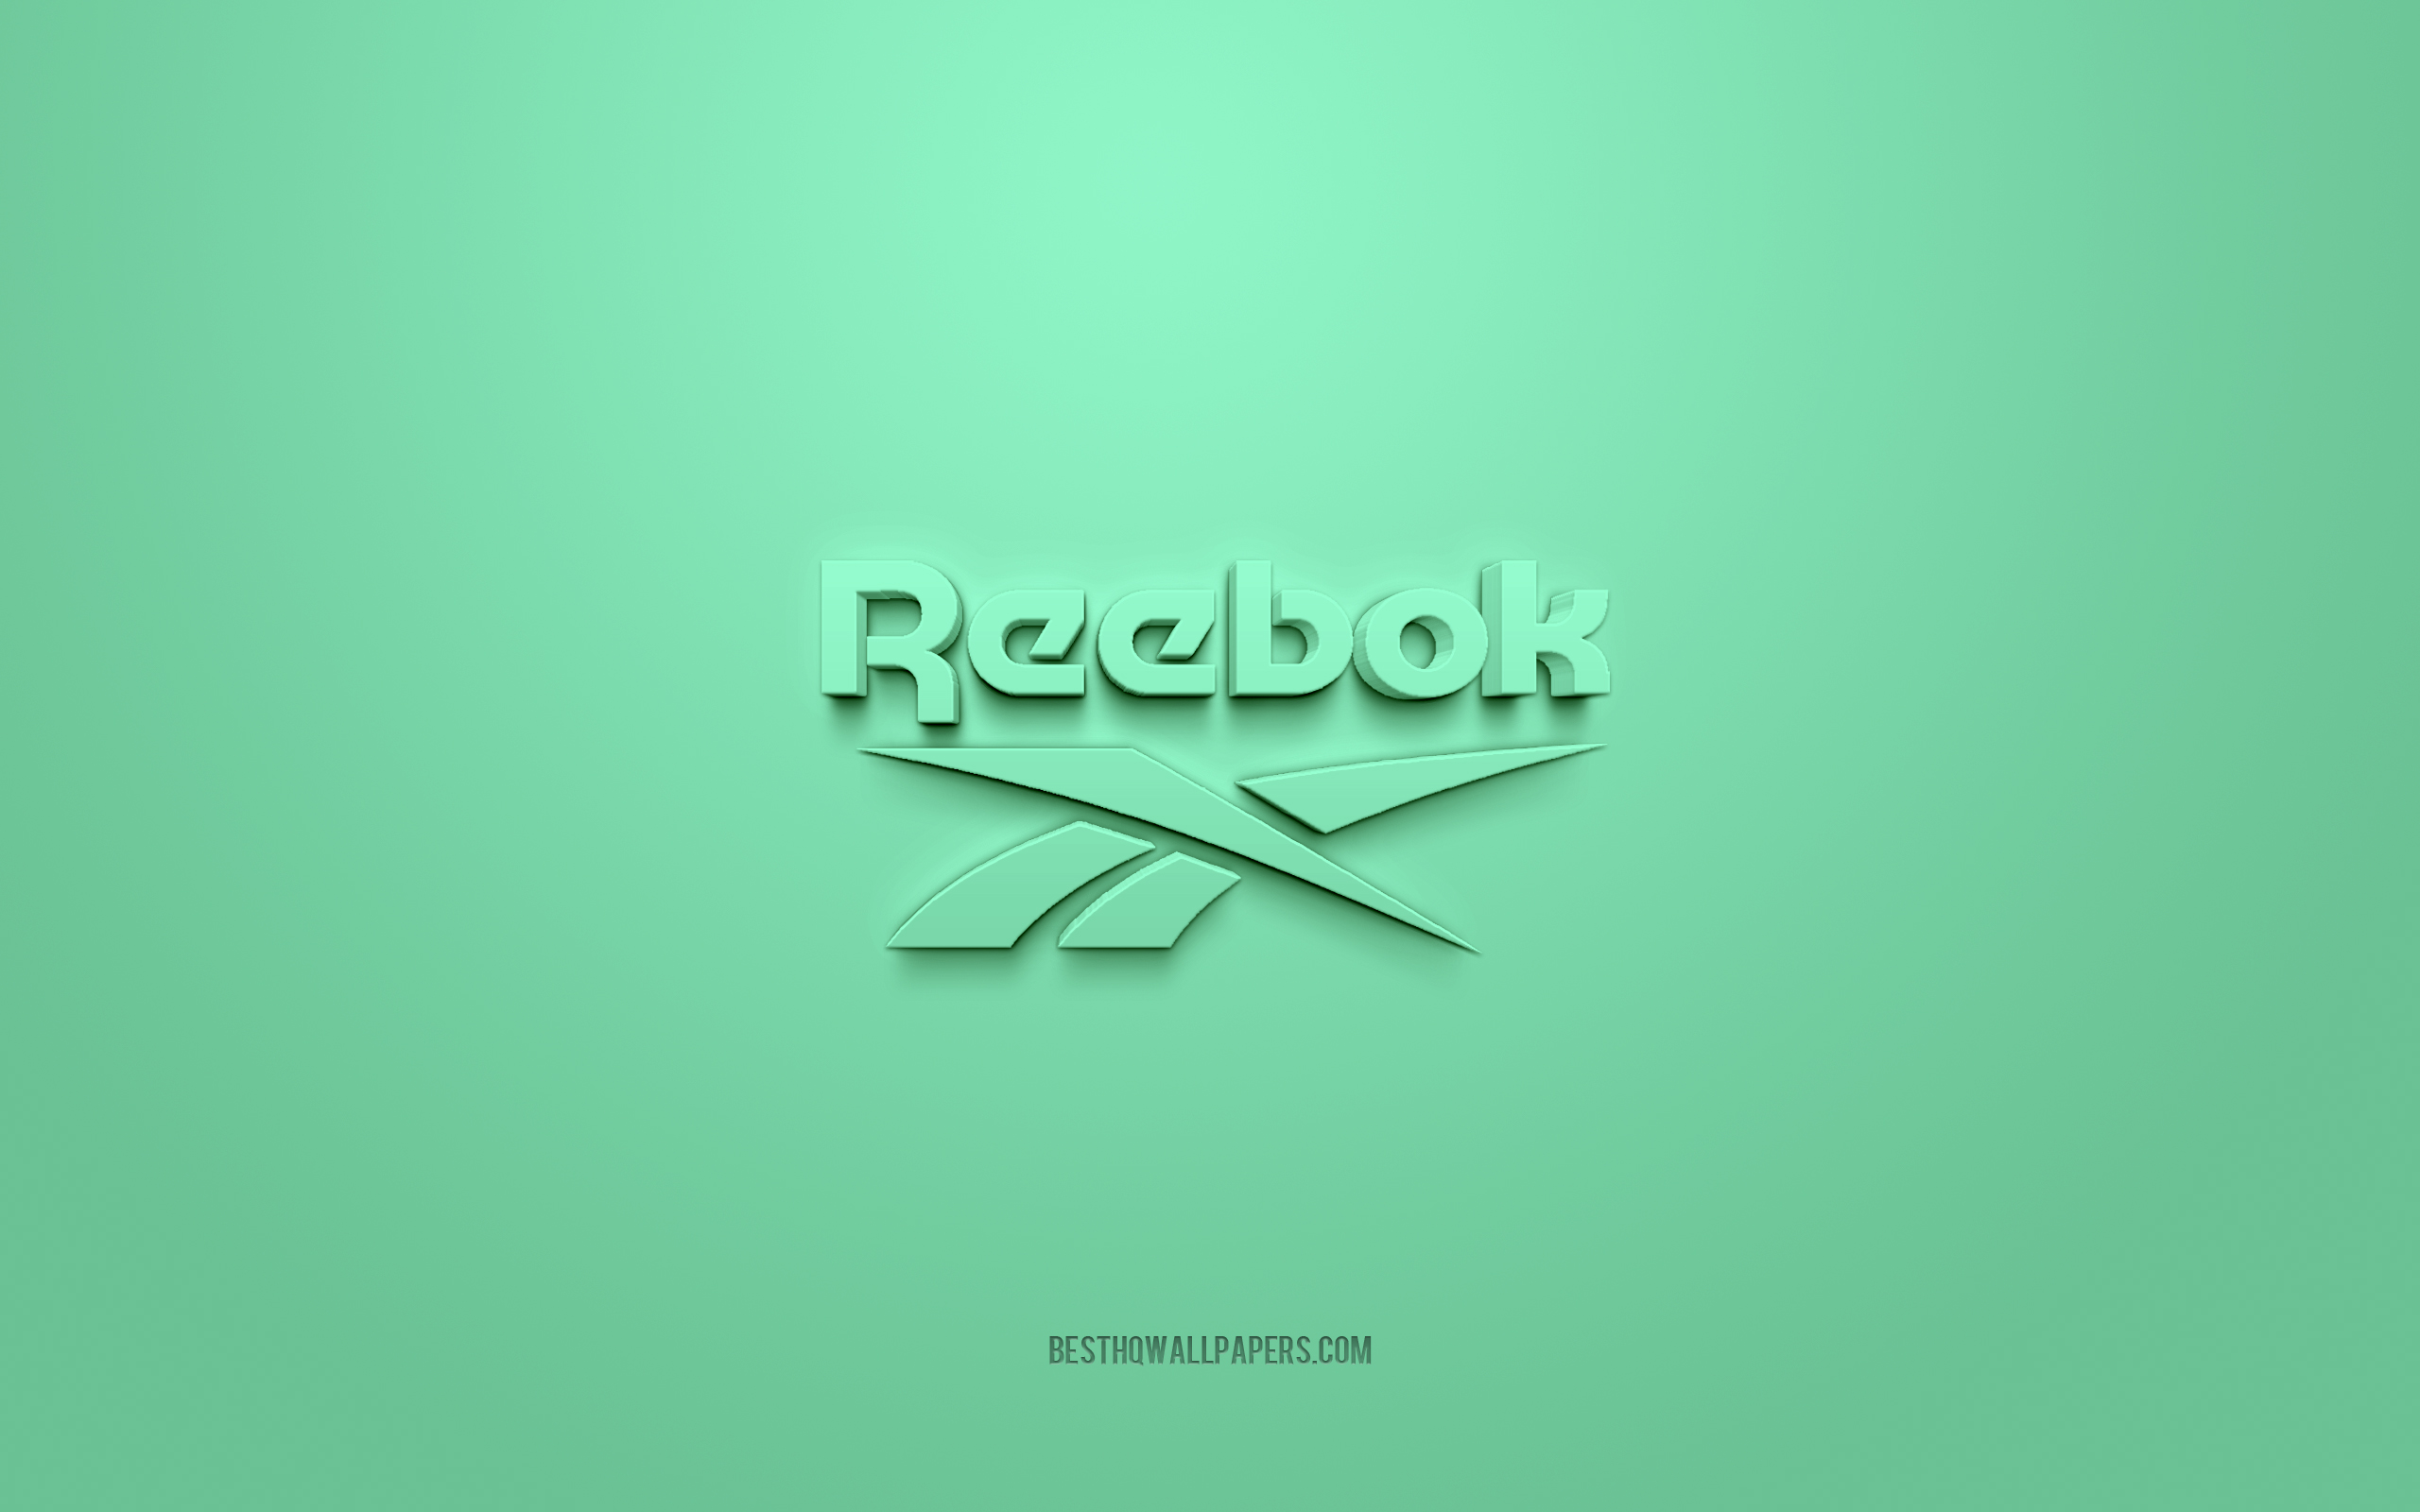 ダウンロード画像 リーボックのロゴ ターコイズブルーの背景 リーボック3dロゴ 3dアート リーボック ブランドロゴ ターコイズの3d リーボックロゴ 画面の解像度 2560x1600 壁紙デスクトップ上